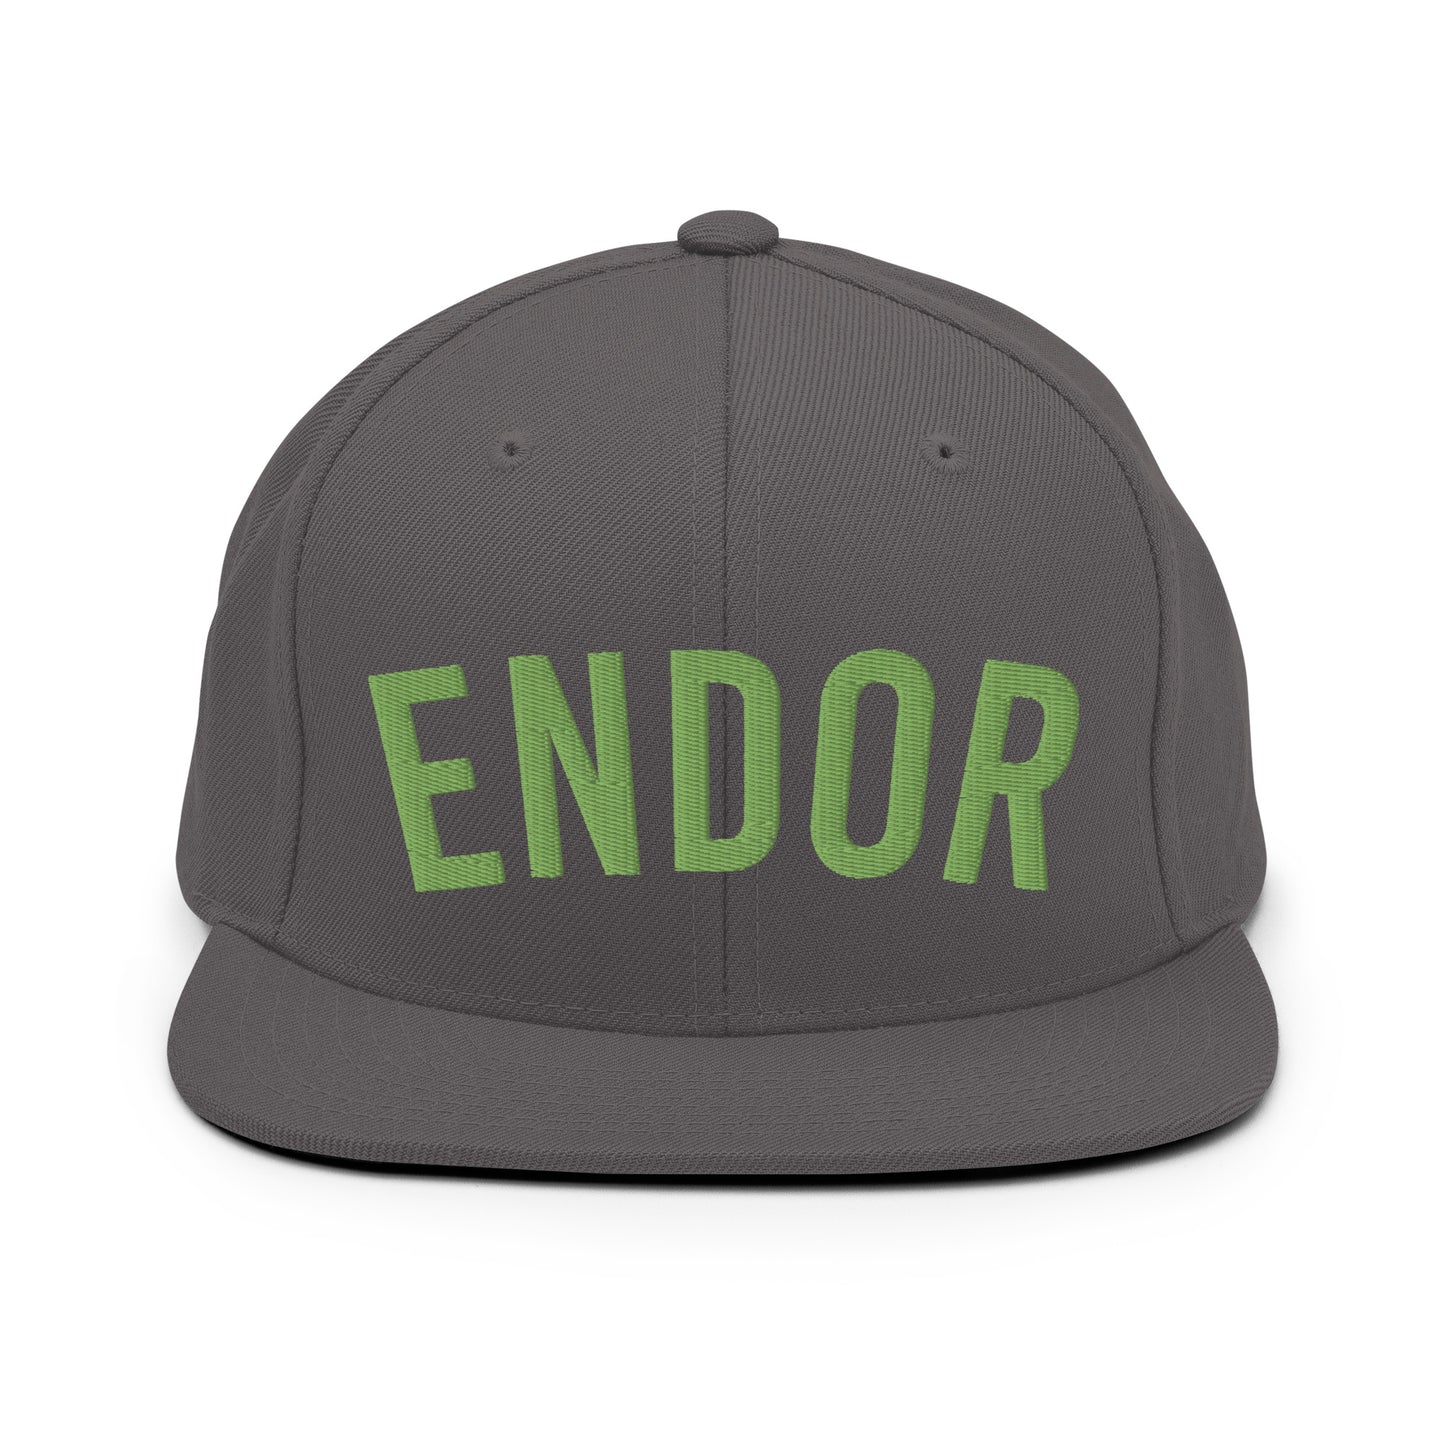 Endor Home Team snapback hat